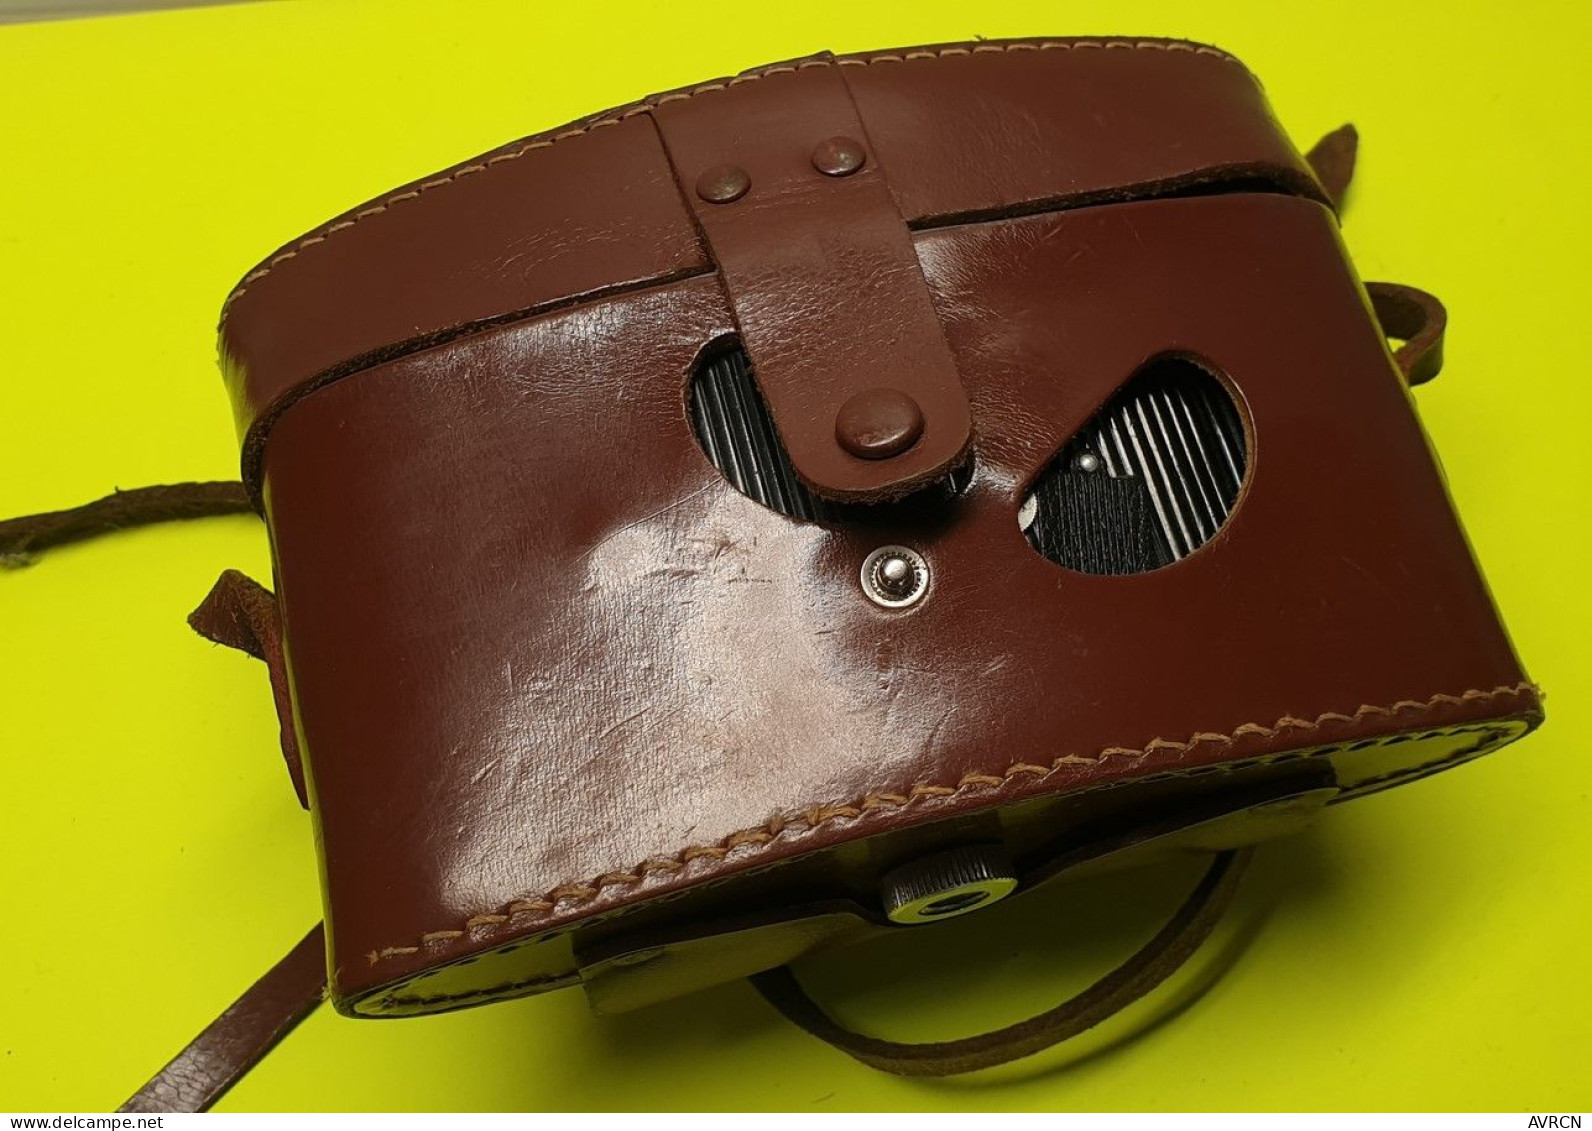 Appareil photographique  argentique Fex Indo Fex 4,5 avec sacoche cuir